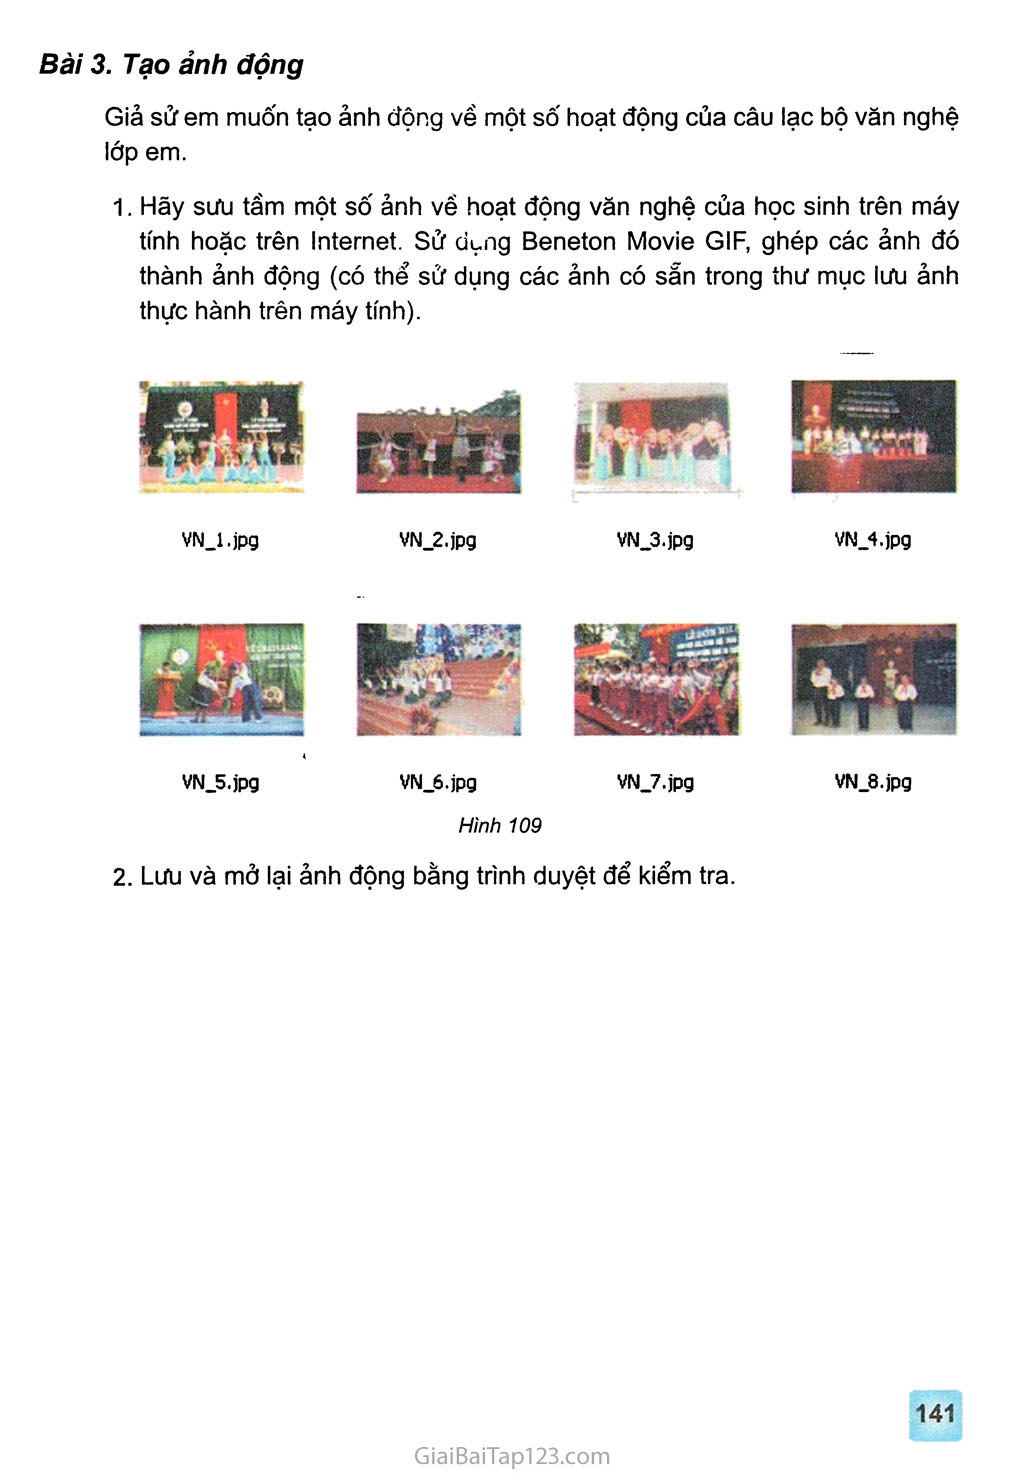 Bài thực hành 10. Tạo ảnh động đơn giản trang 3